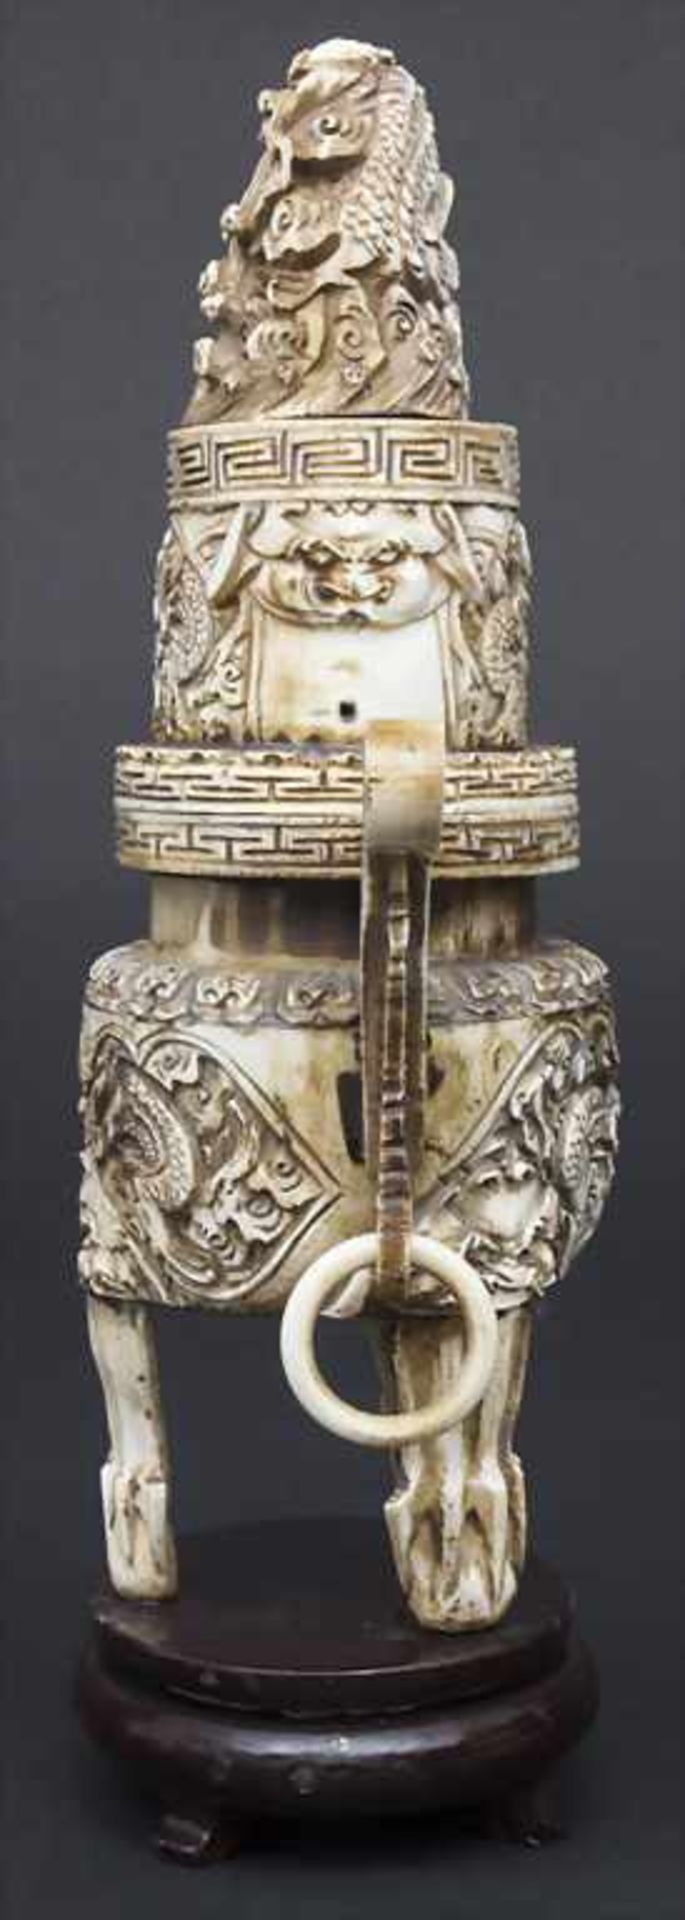 Räuchergefäß mit Drachendekor / An incense burner with dragons, China, um 1900Material: Elfenbein, - Bild 2 aus 11